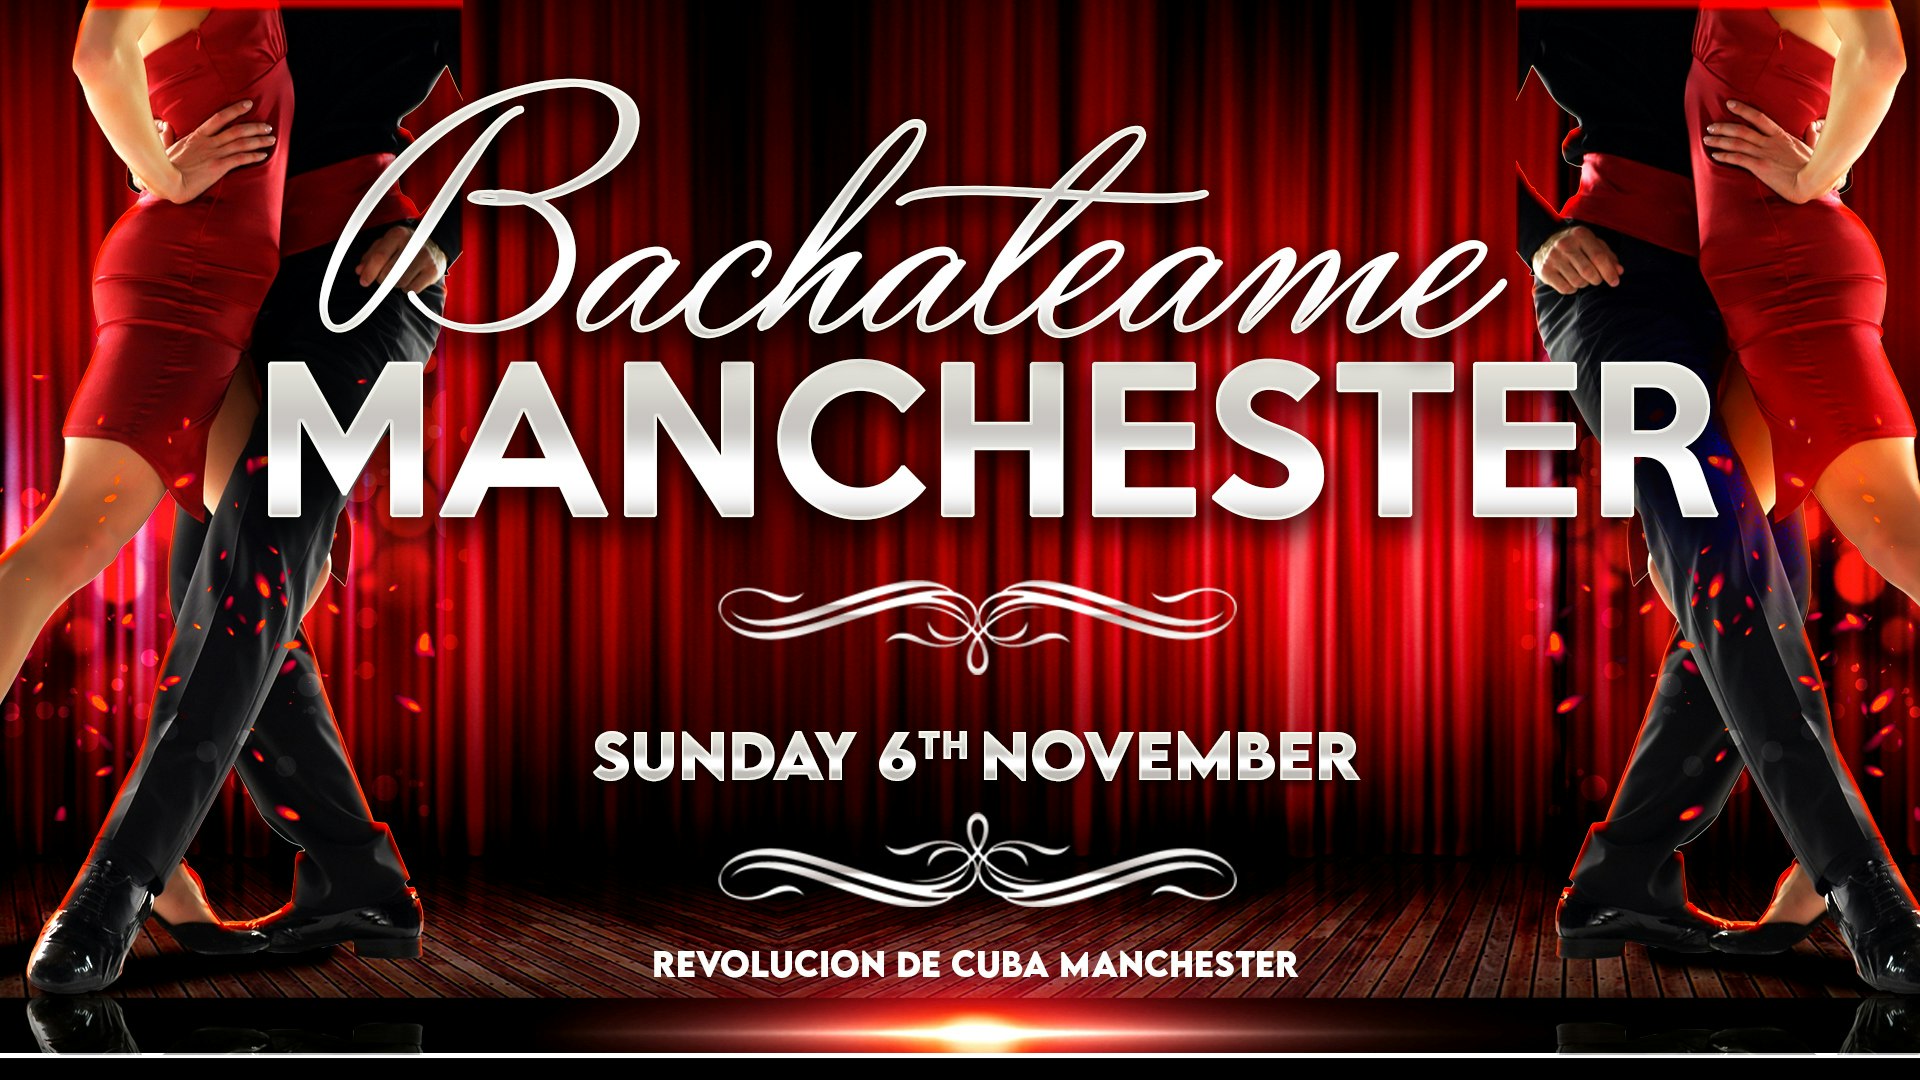 Bachateame Manchester – Sunday 6th November  | Revolucion de Cuba